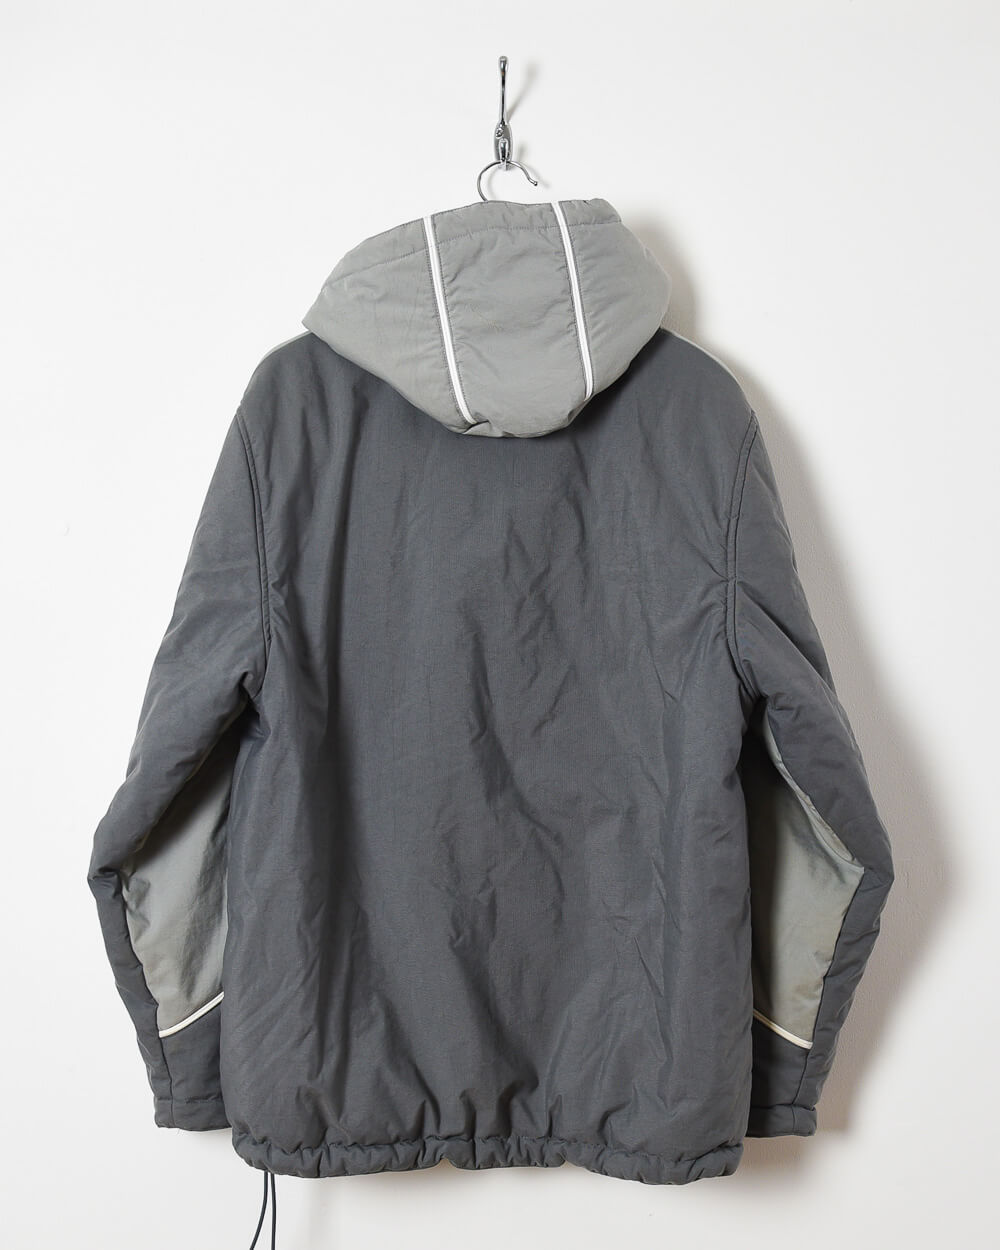 Grey Nike Hooded Winter Coat - Medium